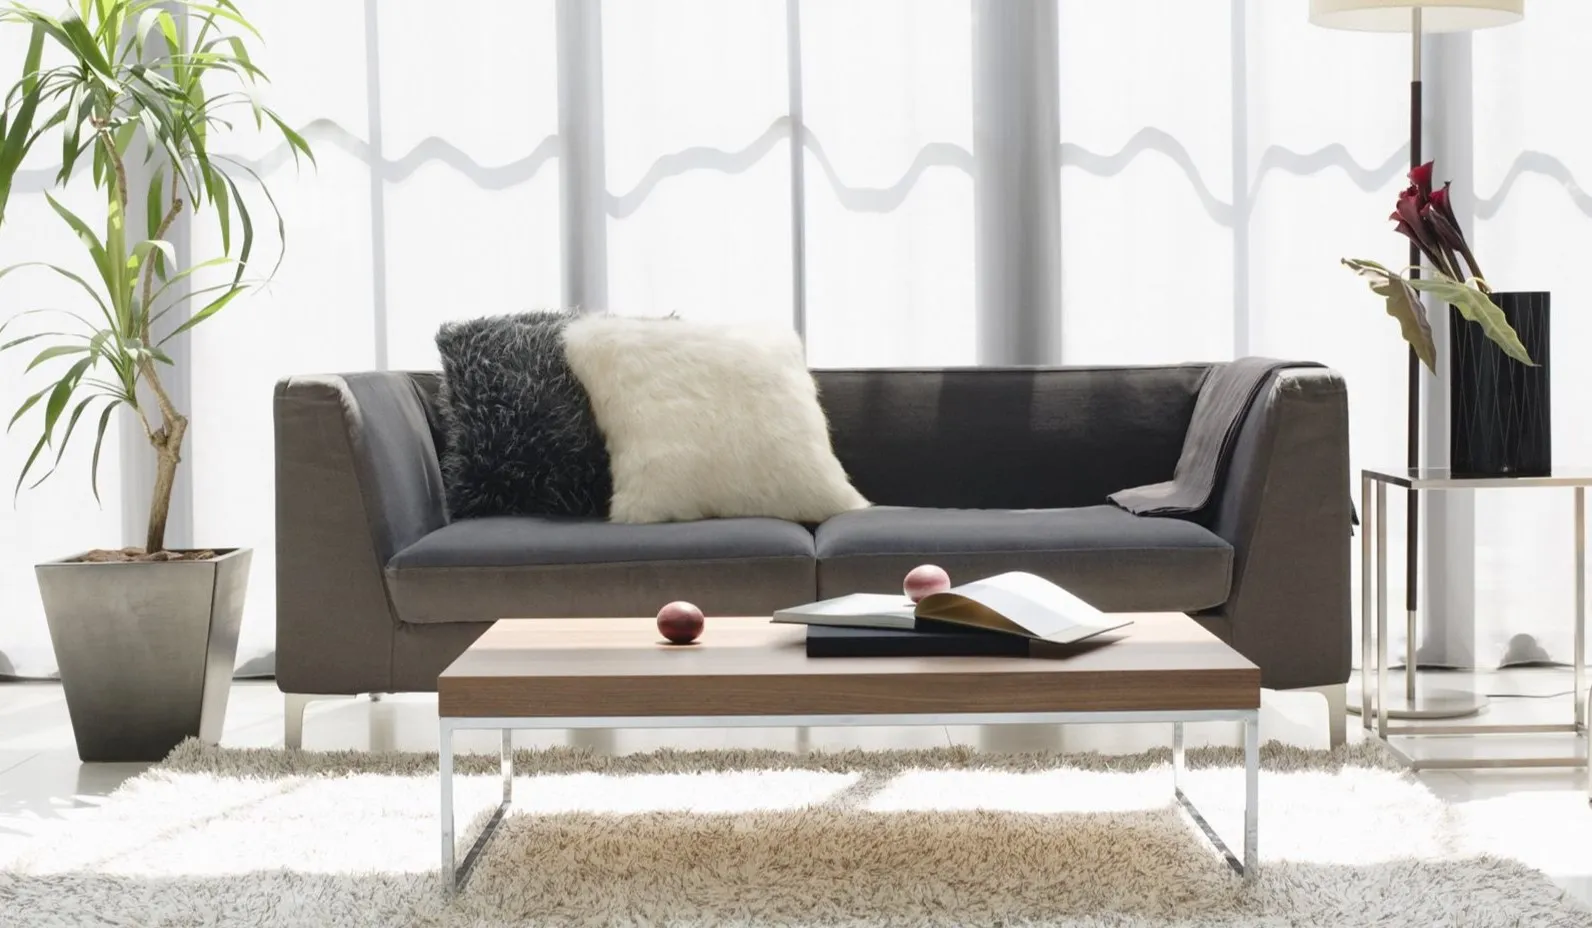 Для декора дивана можно использовать черную и белую подушку в качестве контрастов